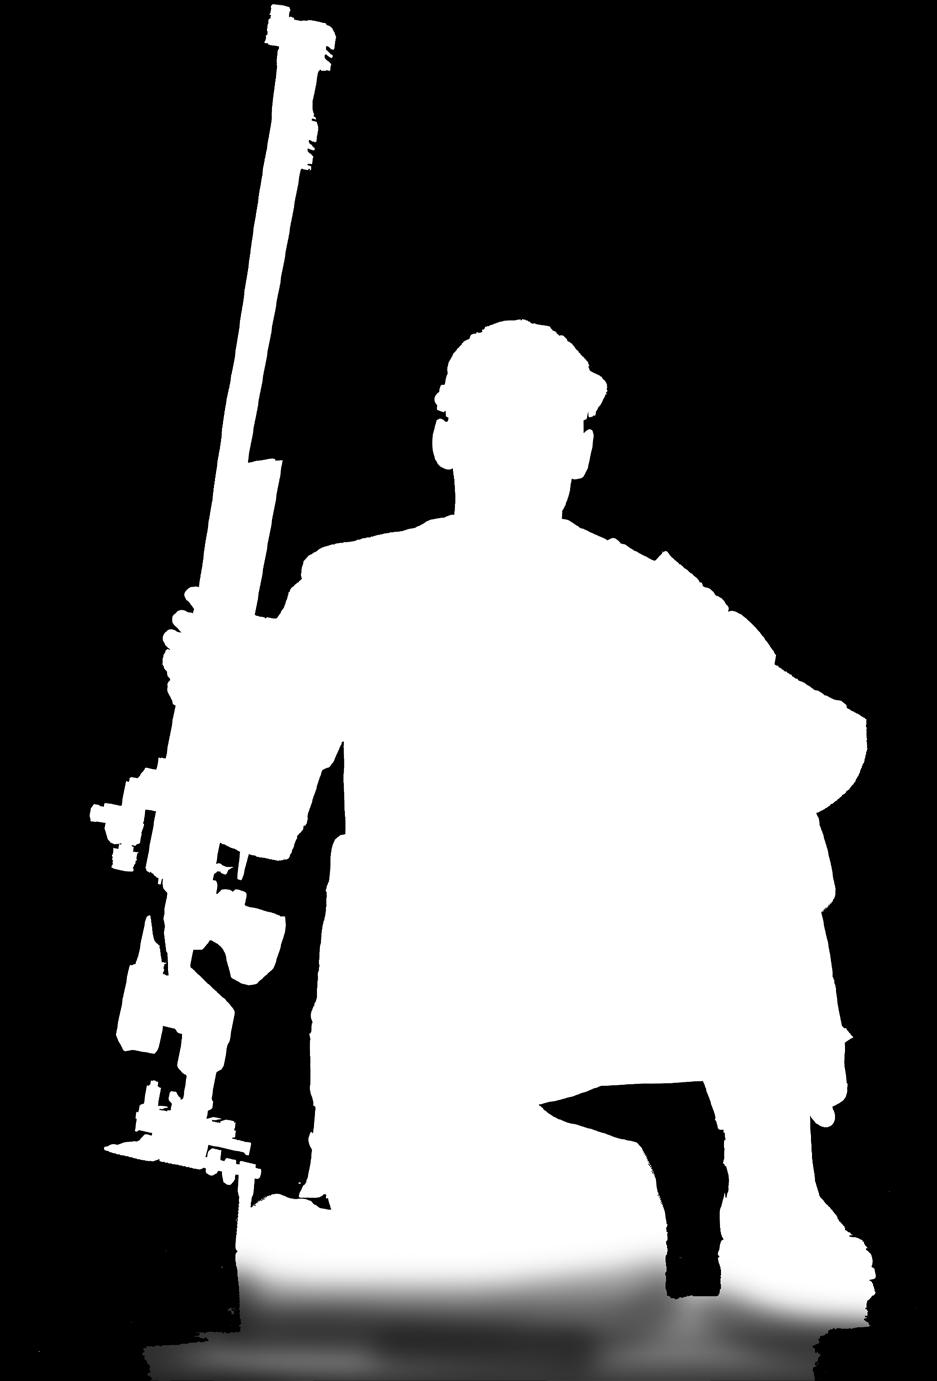 Tarkkuuspatruunoiden edelläkävijä Lapuan patruunat tunnetaan ampujien keskuudessa kaikkialla maailmassa.